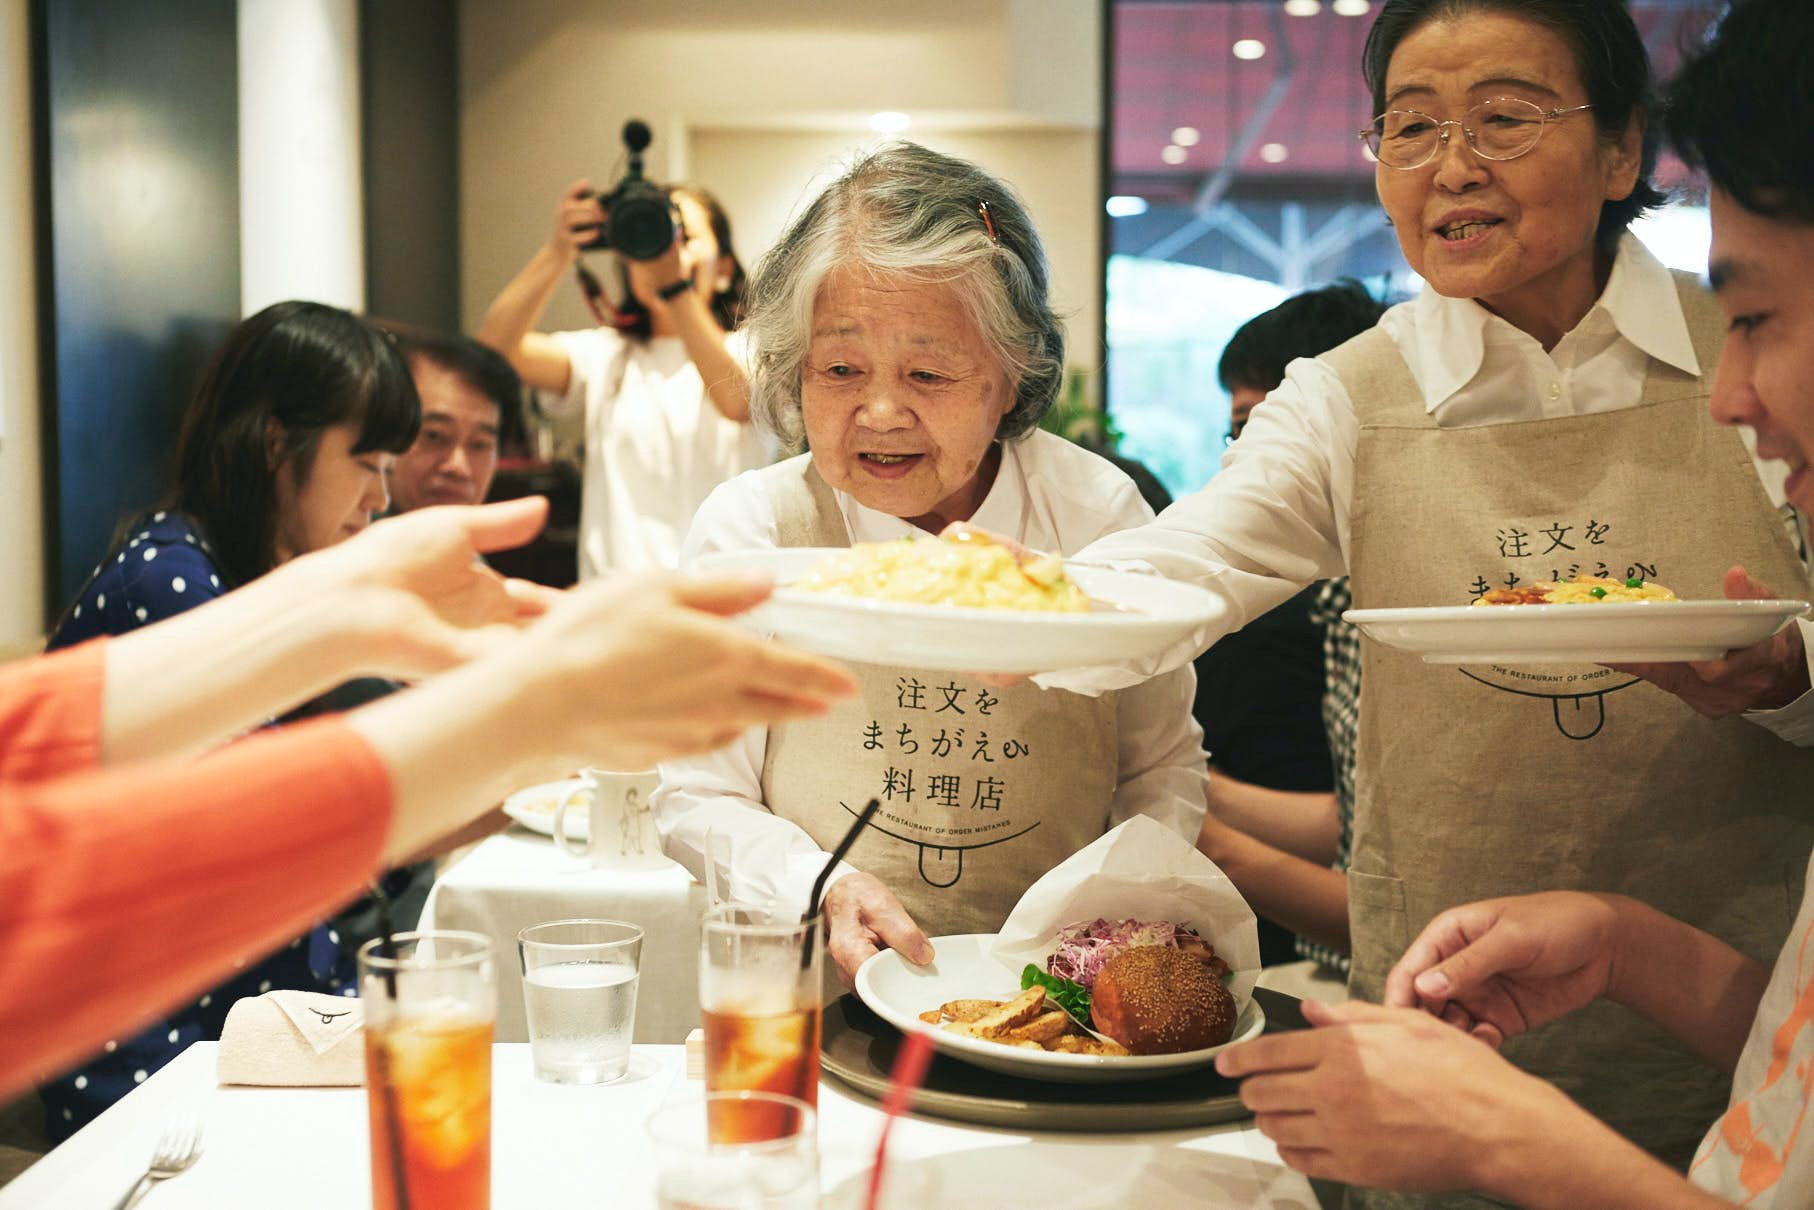 [Góc nhân văn] Nhà hàng Nhật thuê người già mất trí nhớ làm bồi bàn, món ăn thường xuyên bị sai nhưng khách không bao giờ quạu - Ảnh 3.